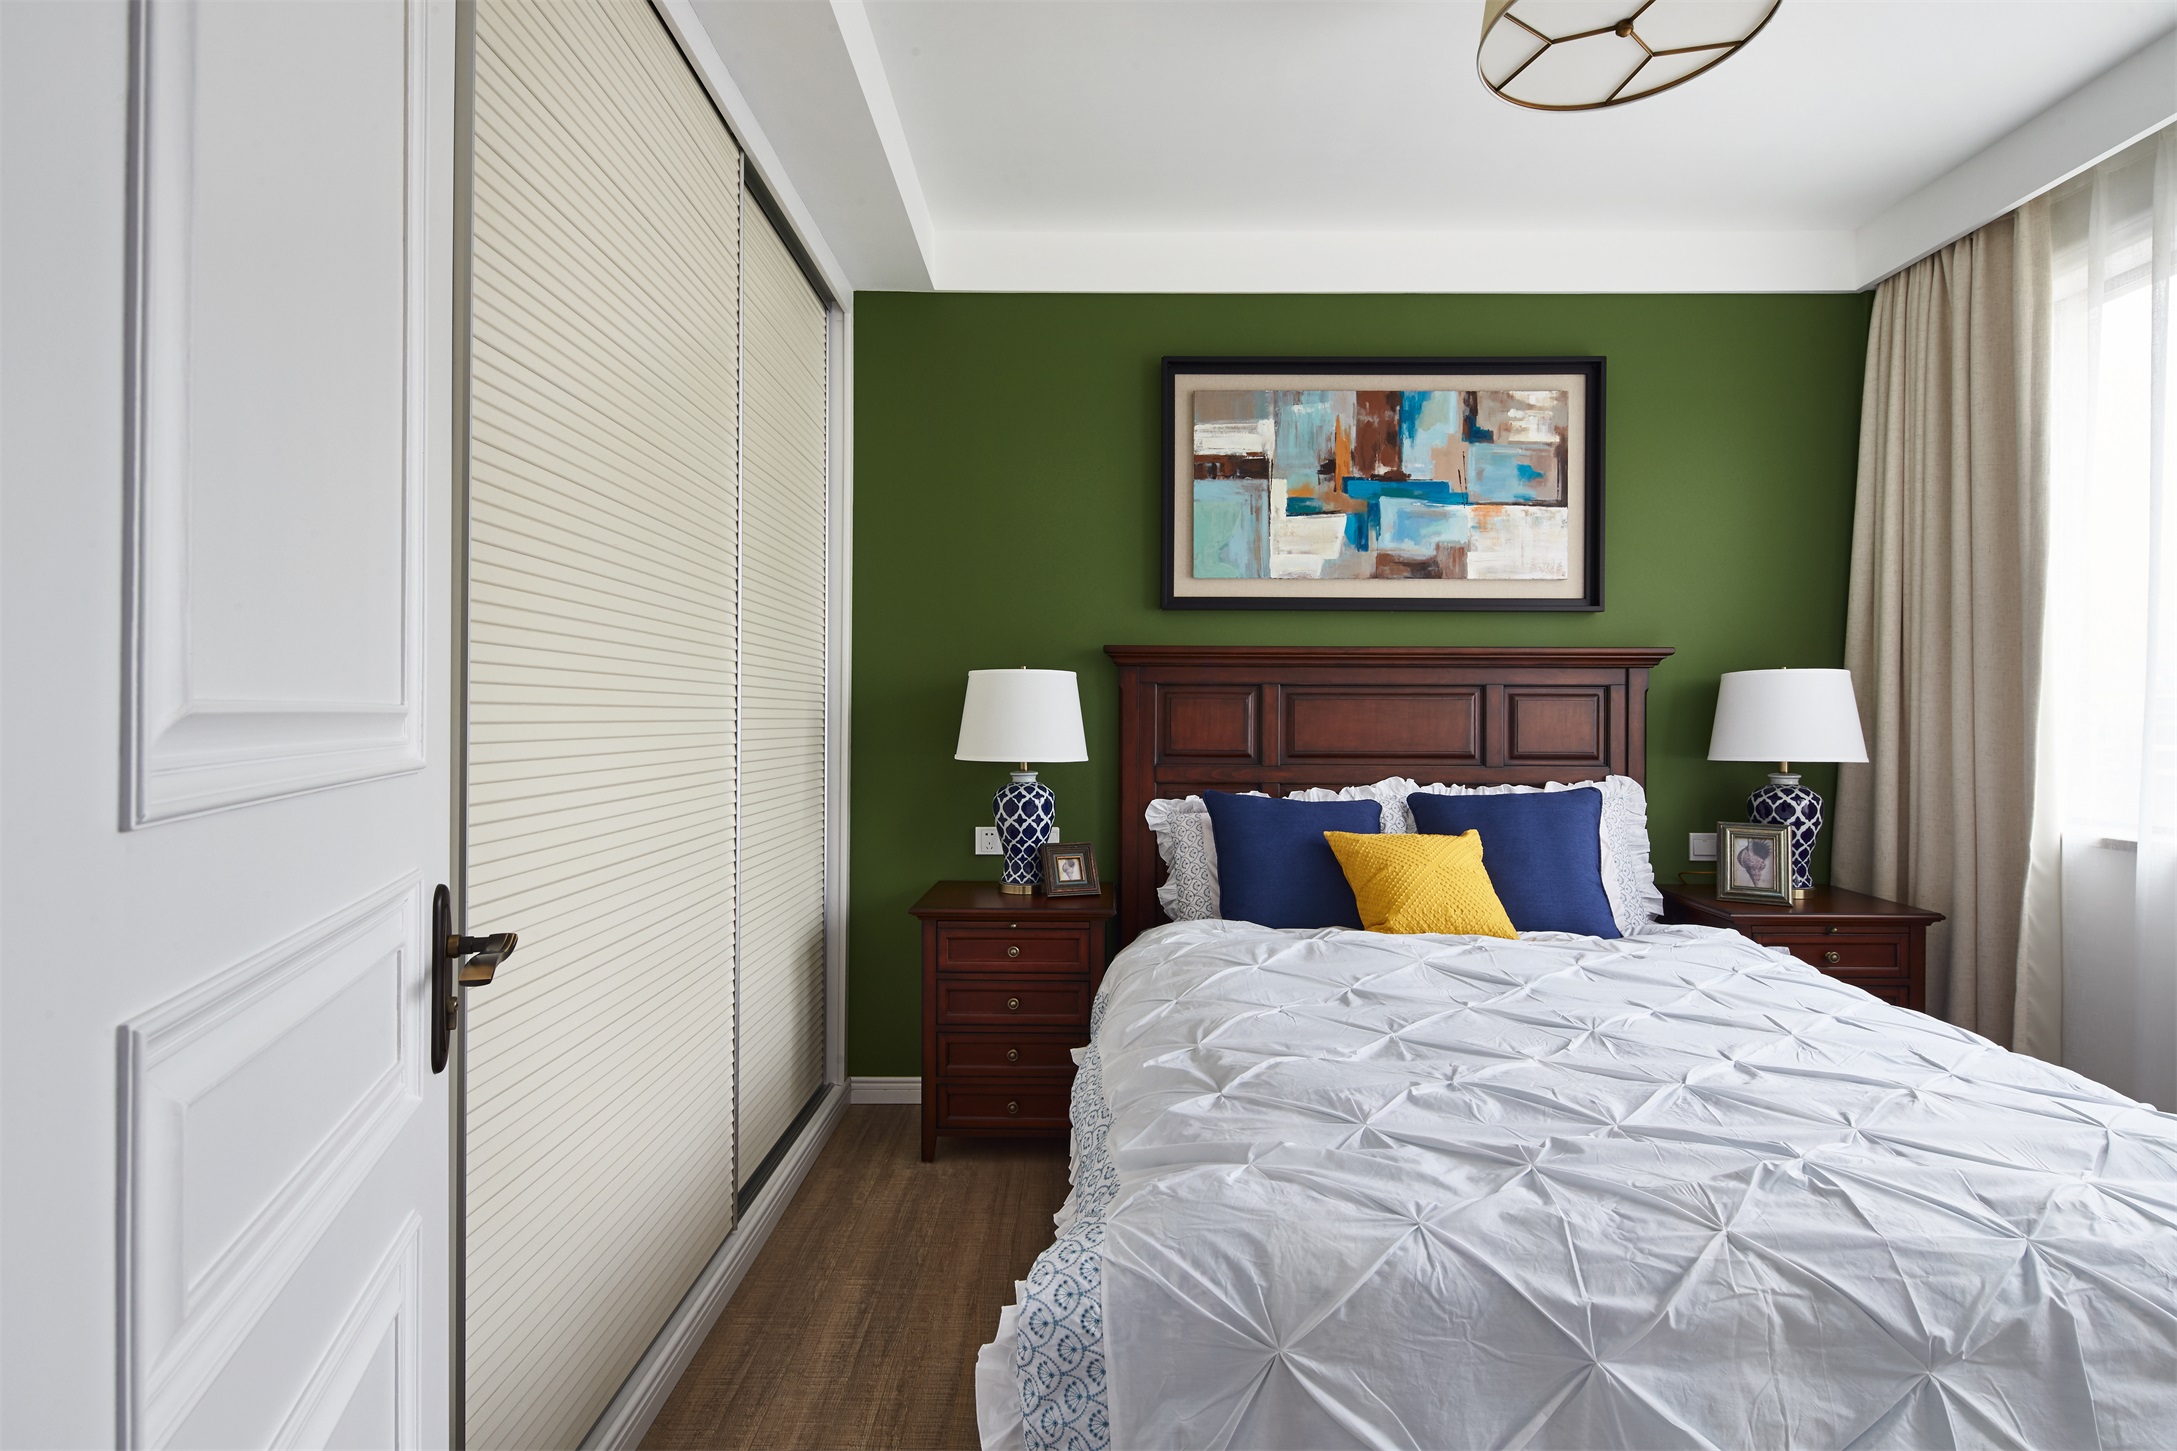 绿色背景墙运用是整体空间的亮点，彰显欧式卧室文艺之感，充分展现主人美学造诣。